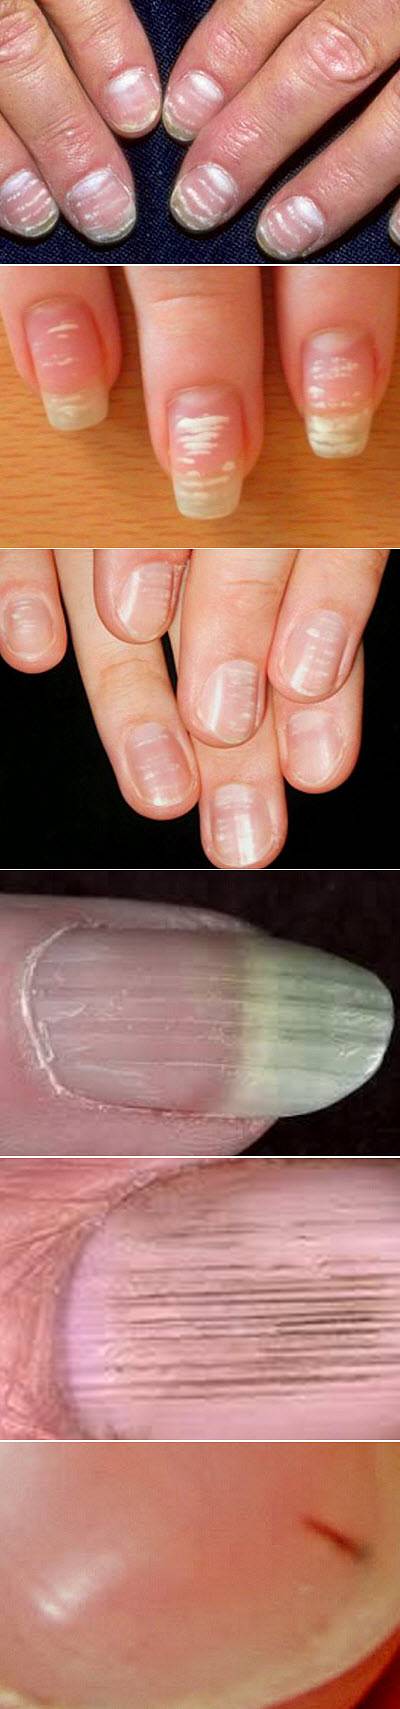 Полоски на ногтях причины вертикальные у женщин. Ониходистрофия, лейконихия. Вертикальные полосы на ногтях. Поперечные полосы на ногтях. Поперечные белые полоски на ногтях.